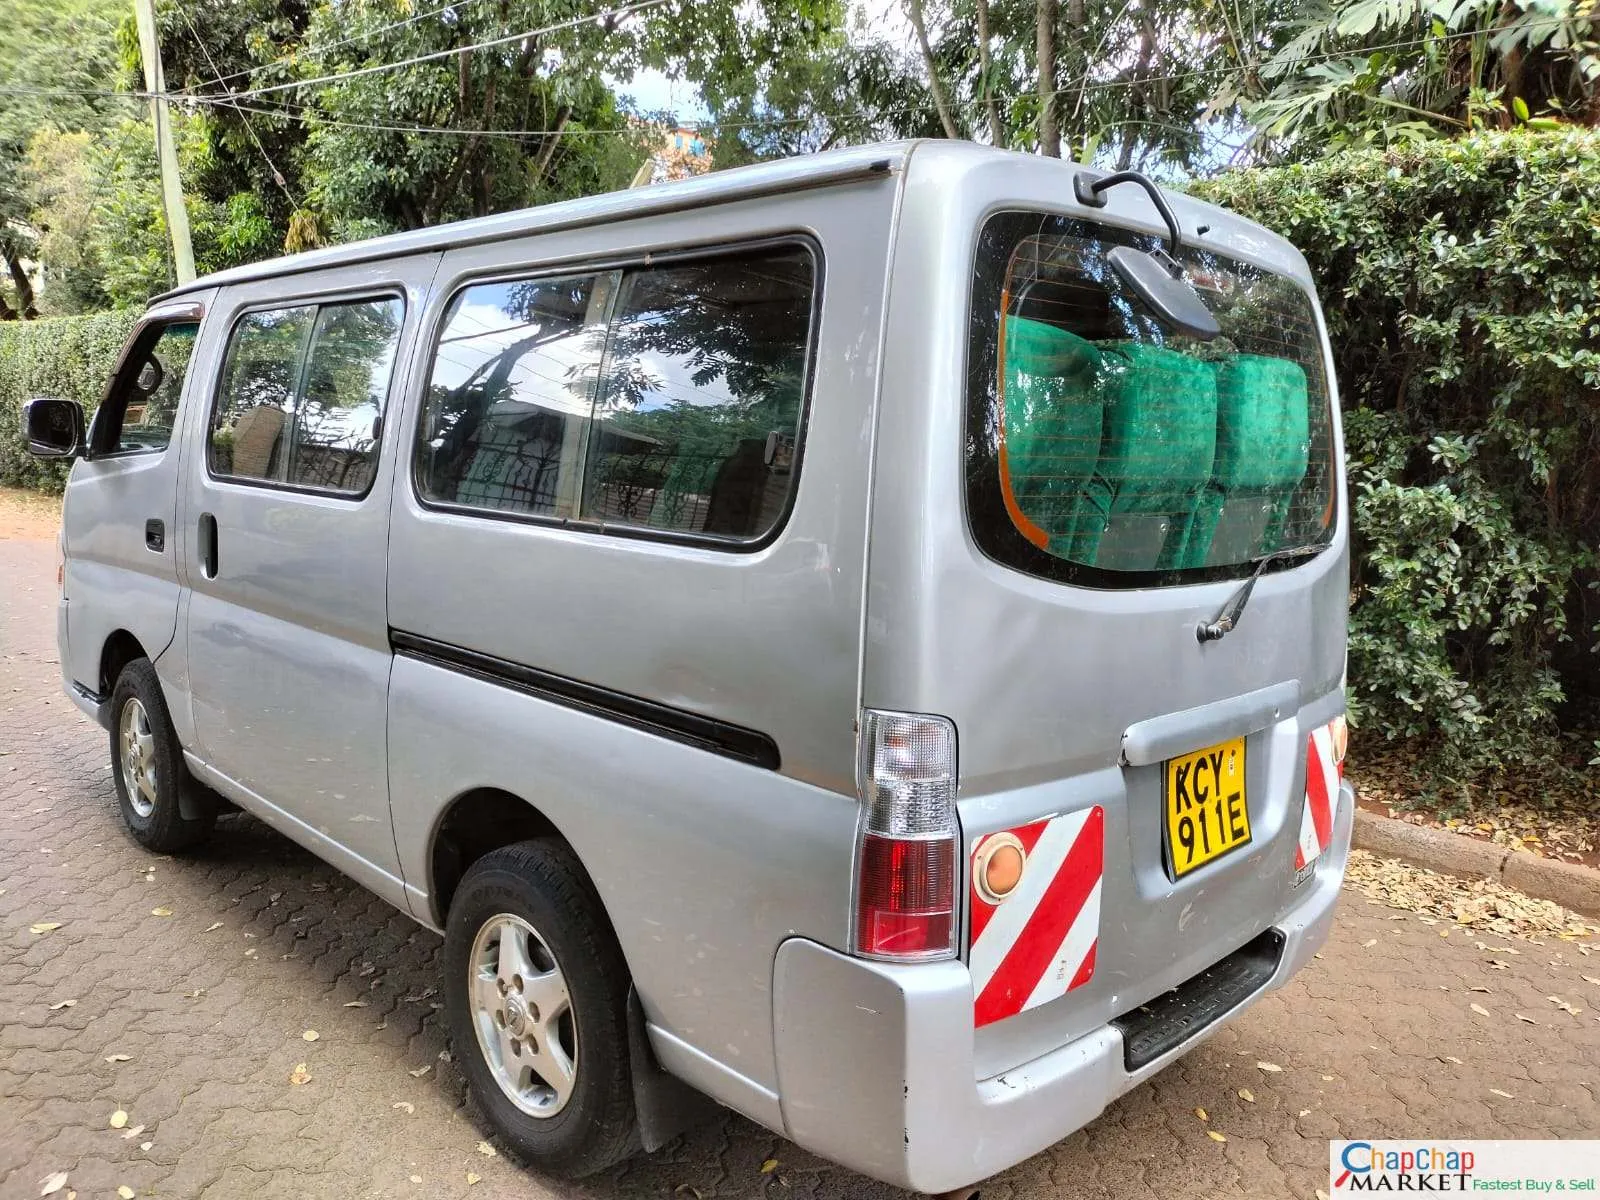 Nissan caravan for sale in Kenya QUICK SALE urvan van You Pay 40% Deposit Trade in Ok EXCLUSIVE hire purchase installments diesel private